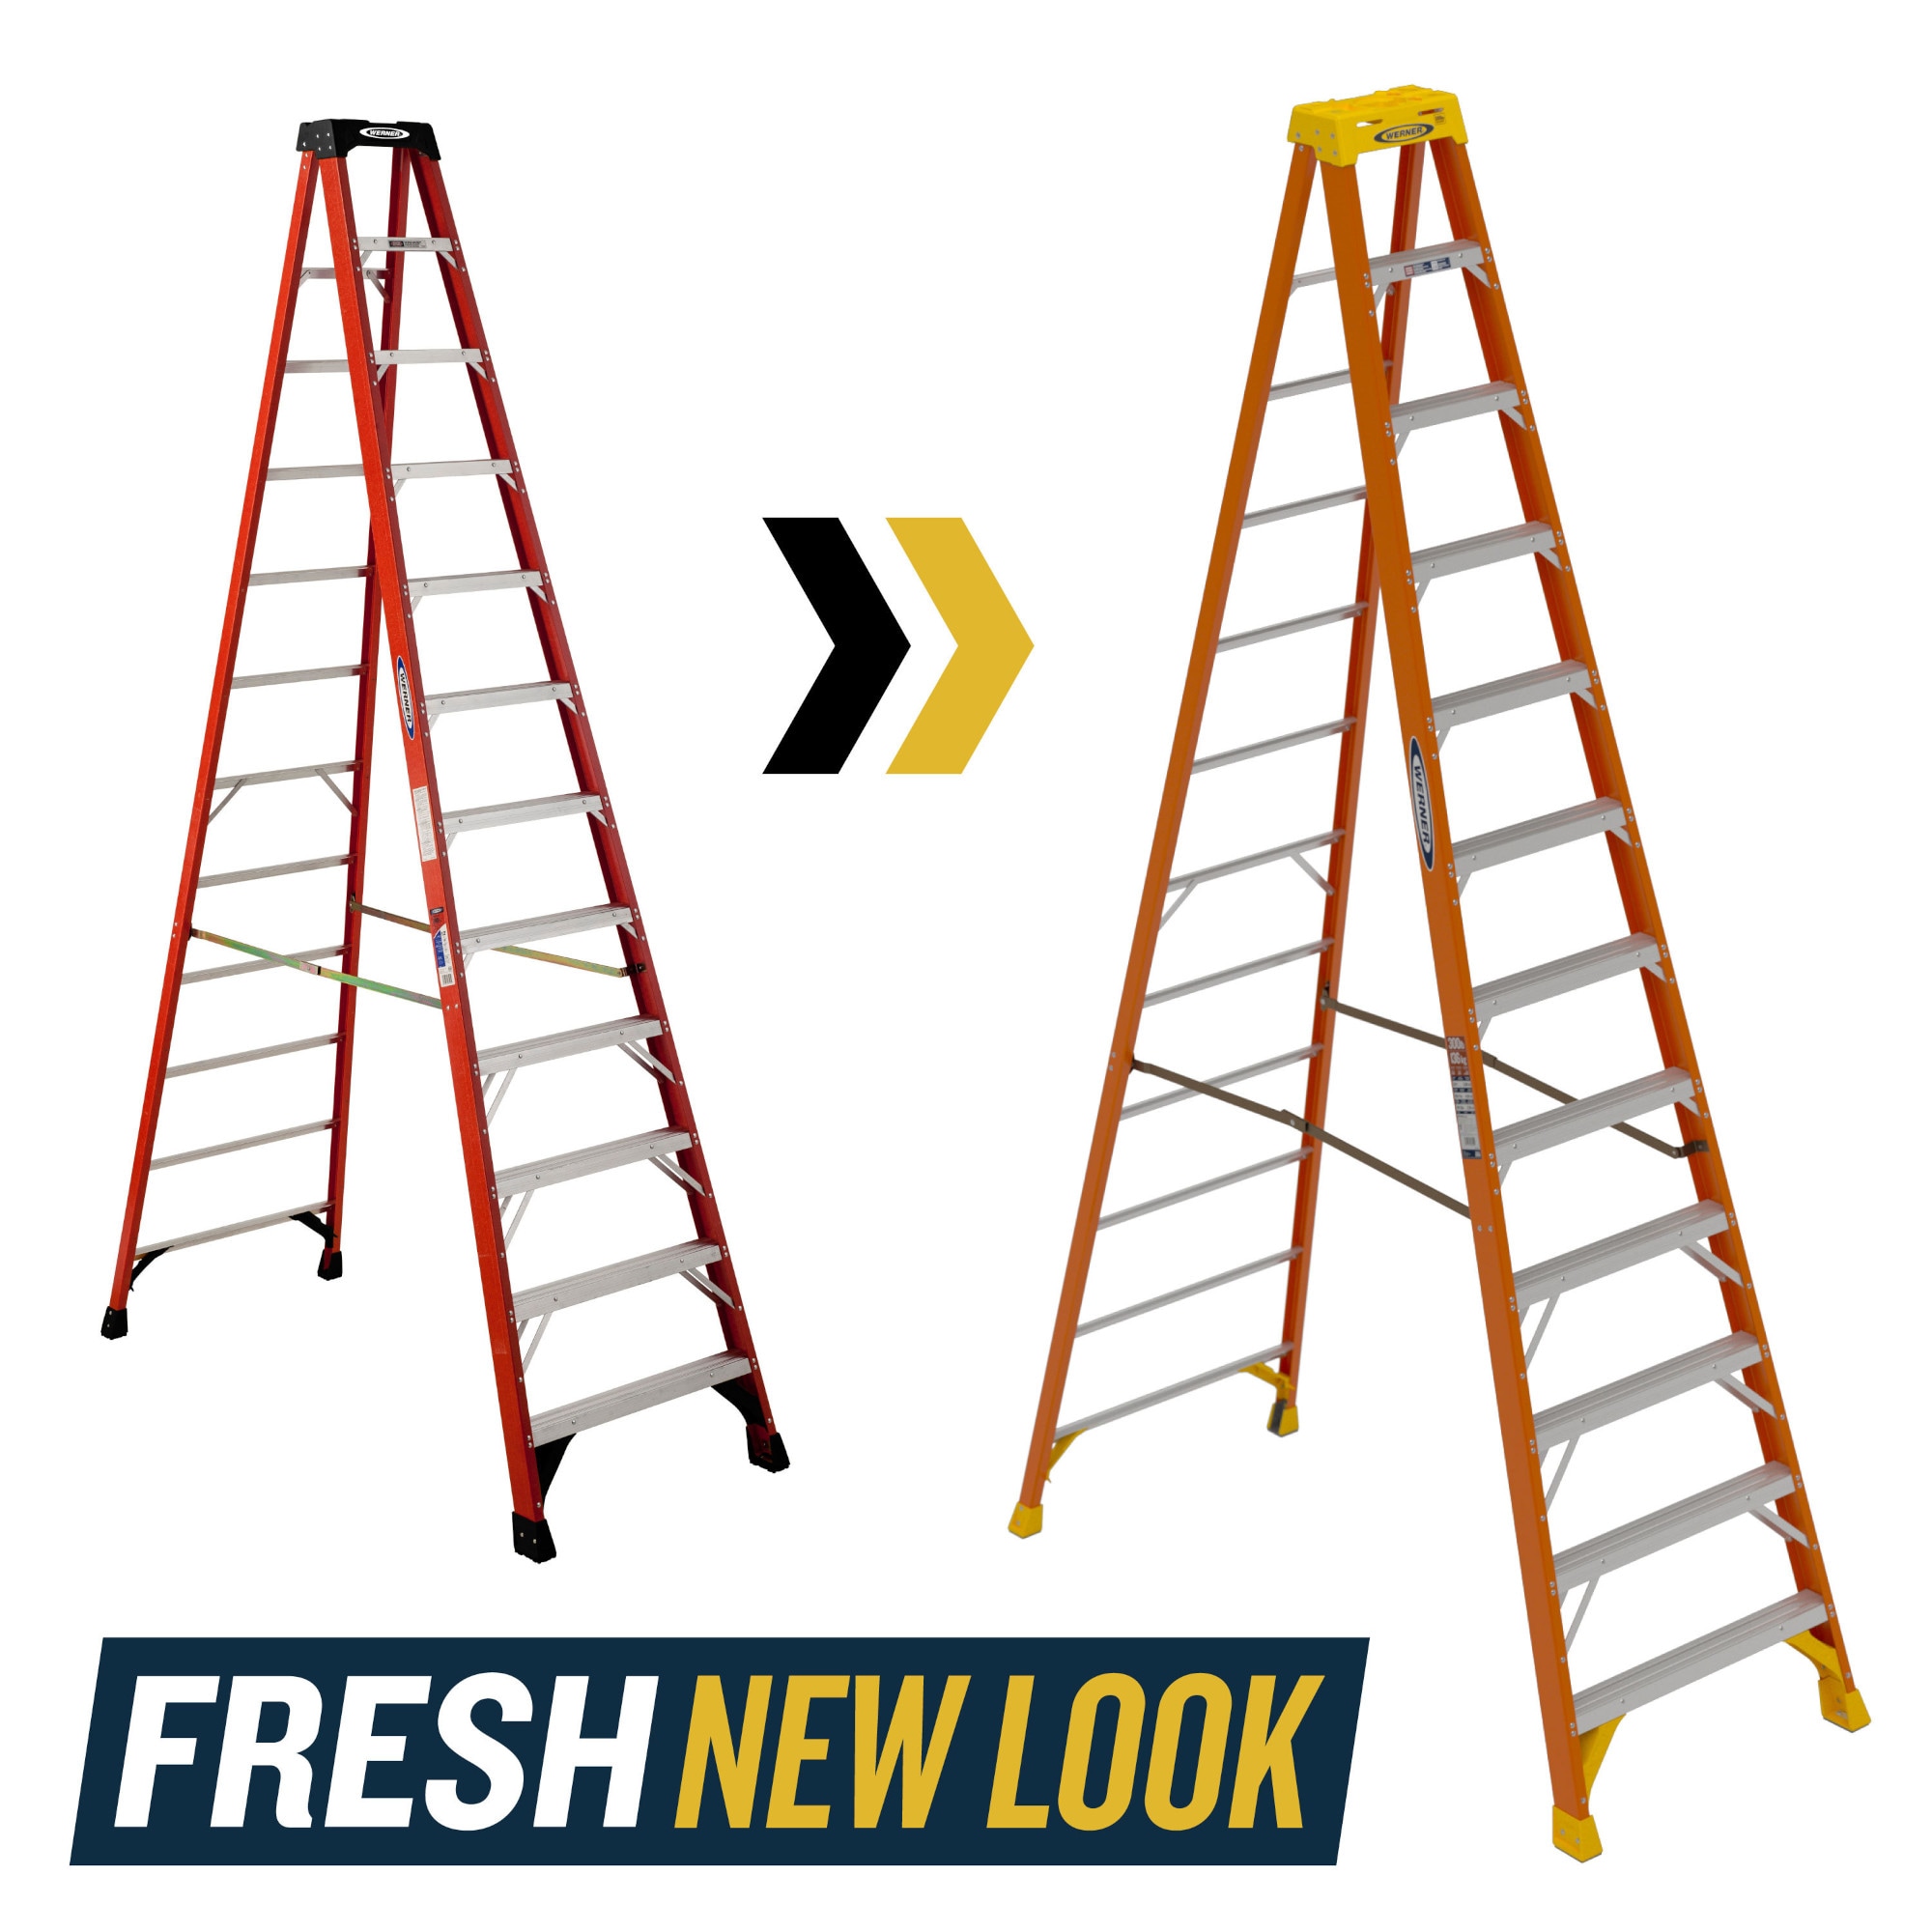 12 Foot Ladder - Website Hunt